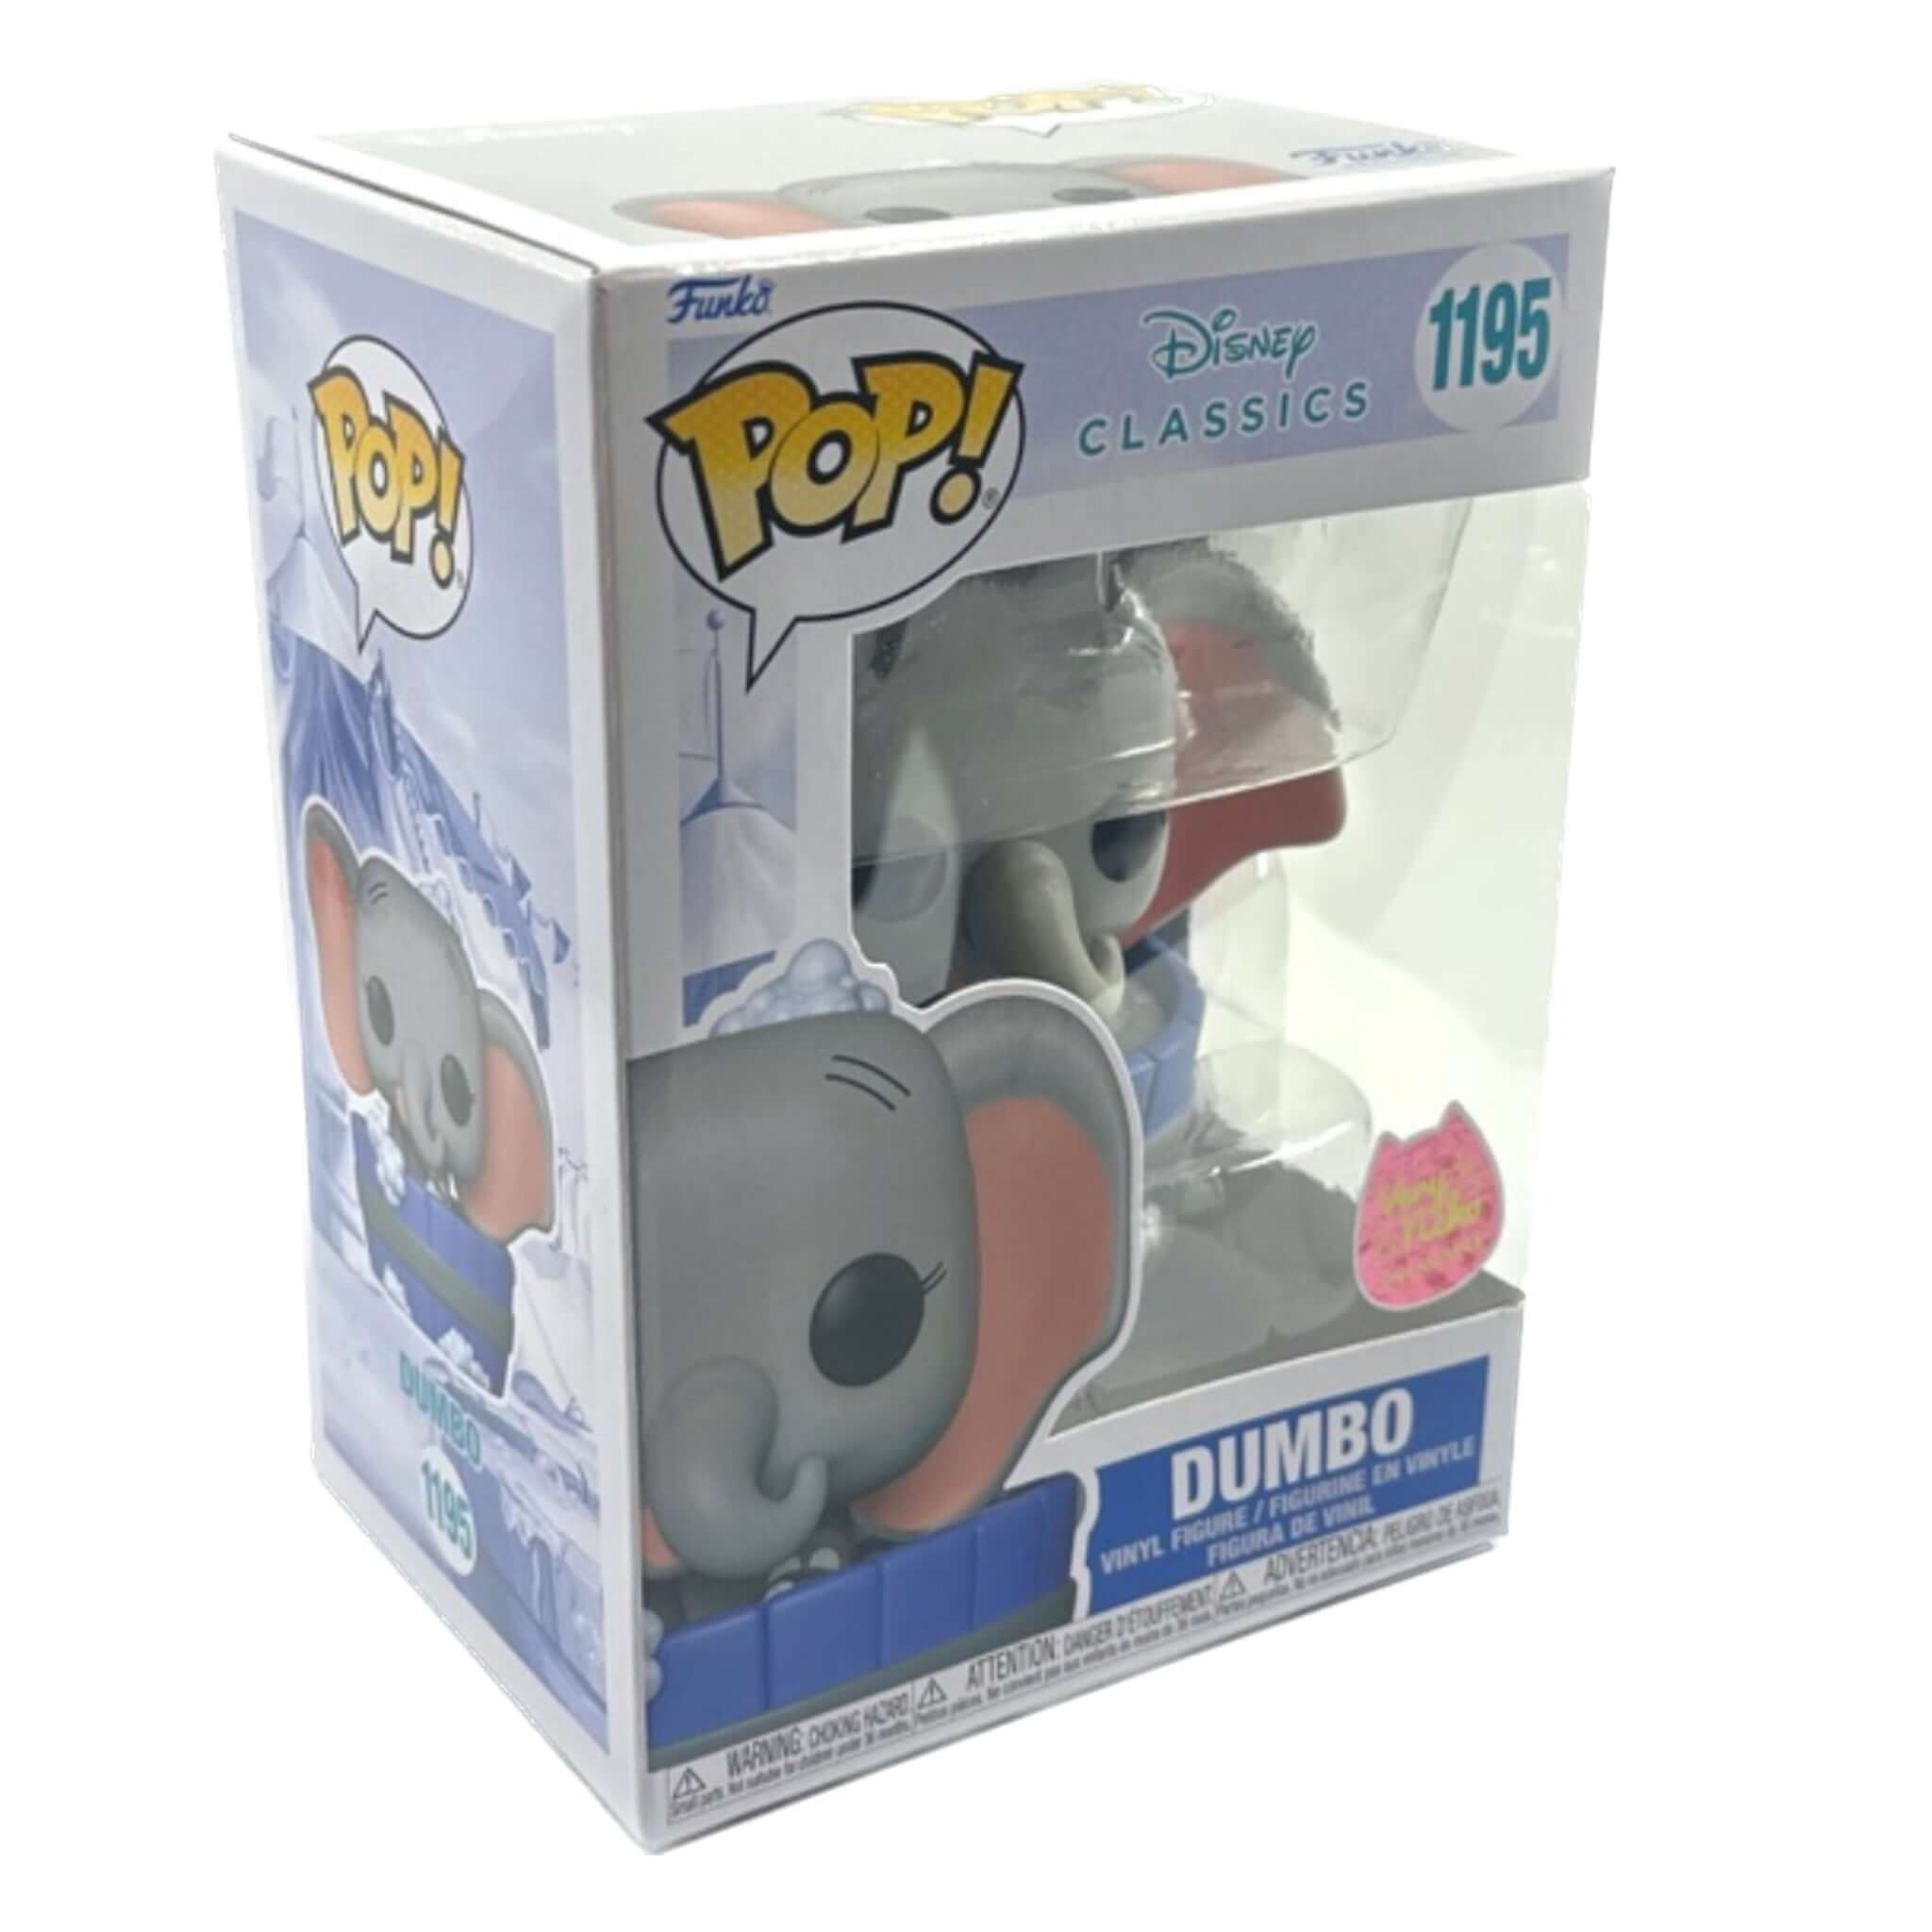 Dumbo Funko Pop! NEKO VERY EXCLUSIVE